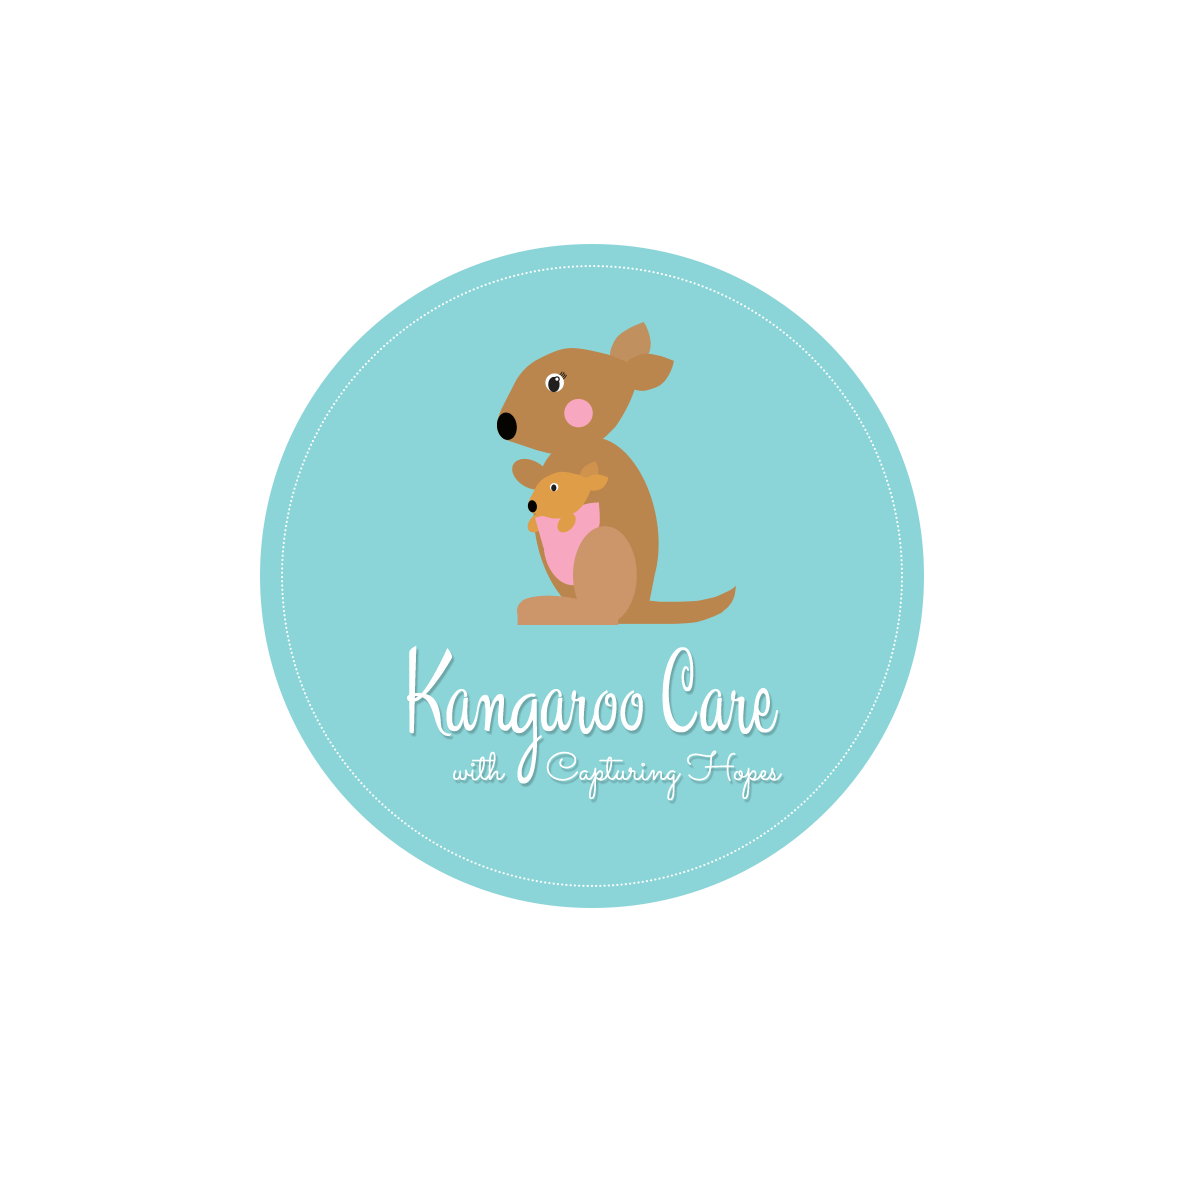 Kangaroo Care Logo - Kangaroo Care | Capturing Hopes